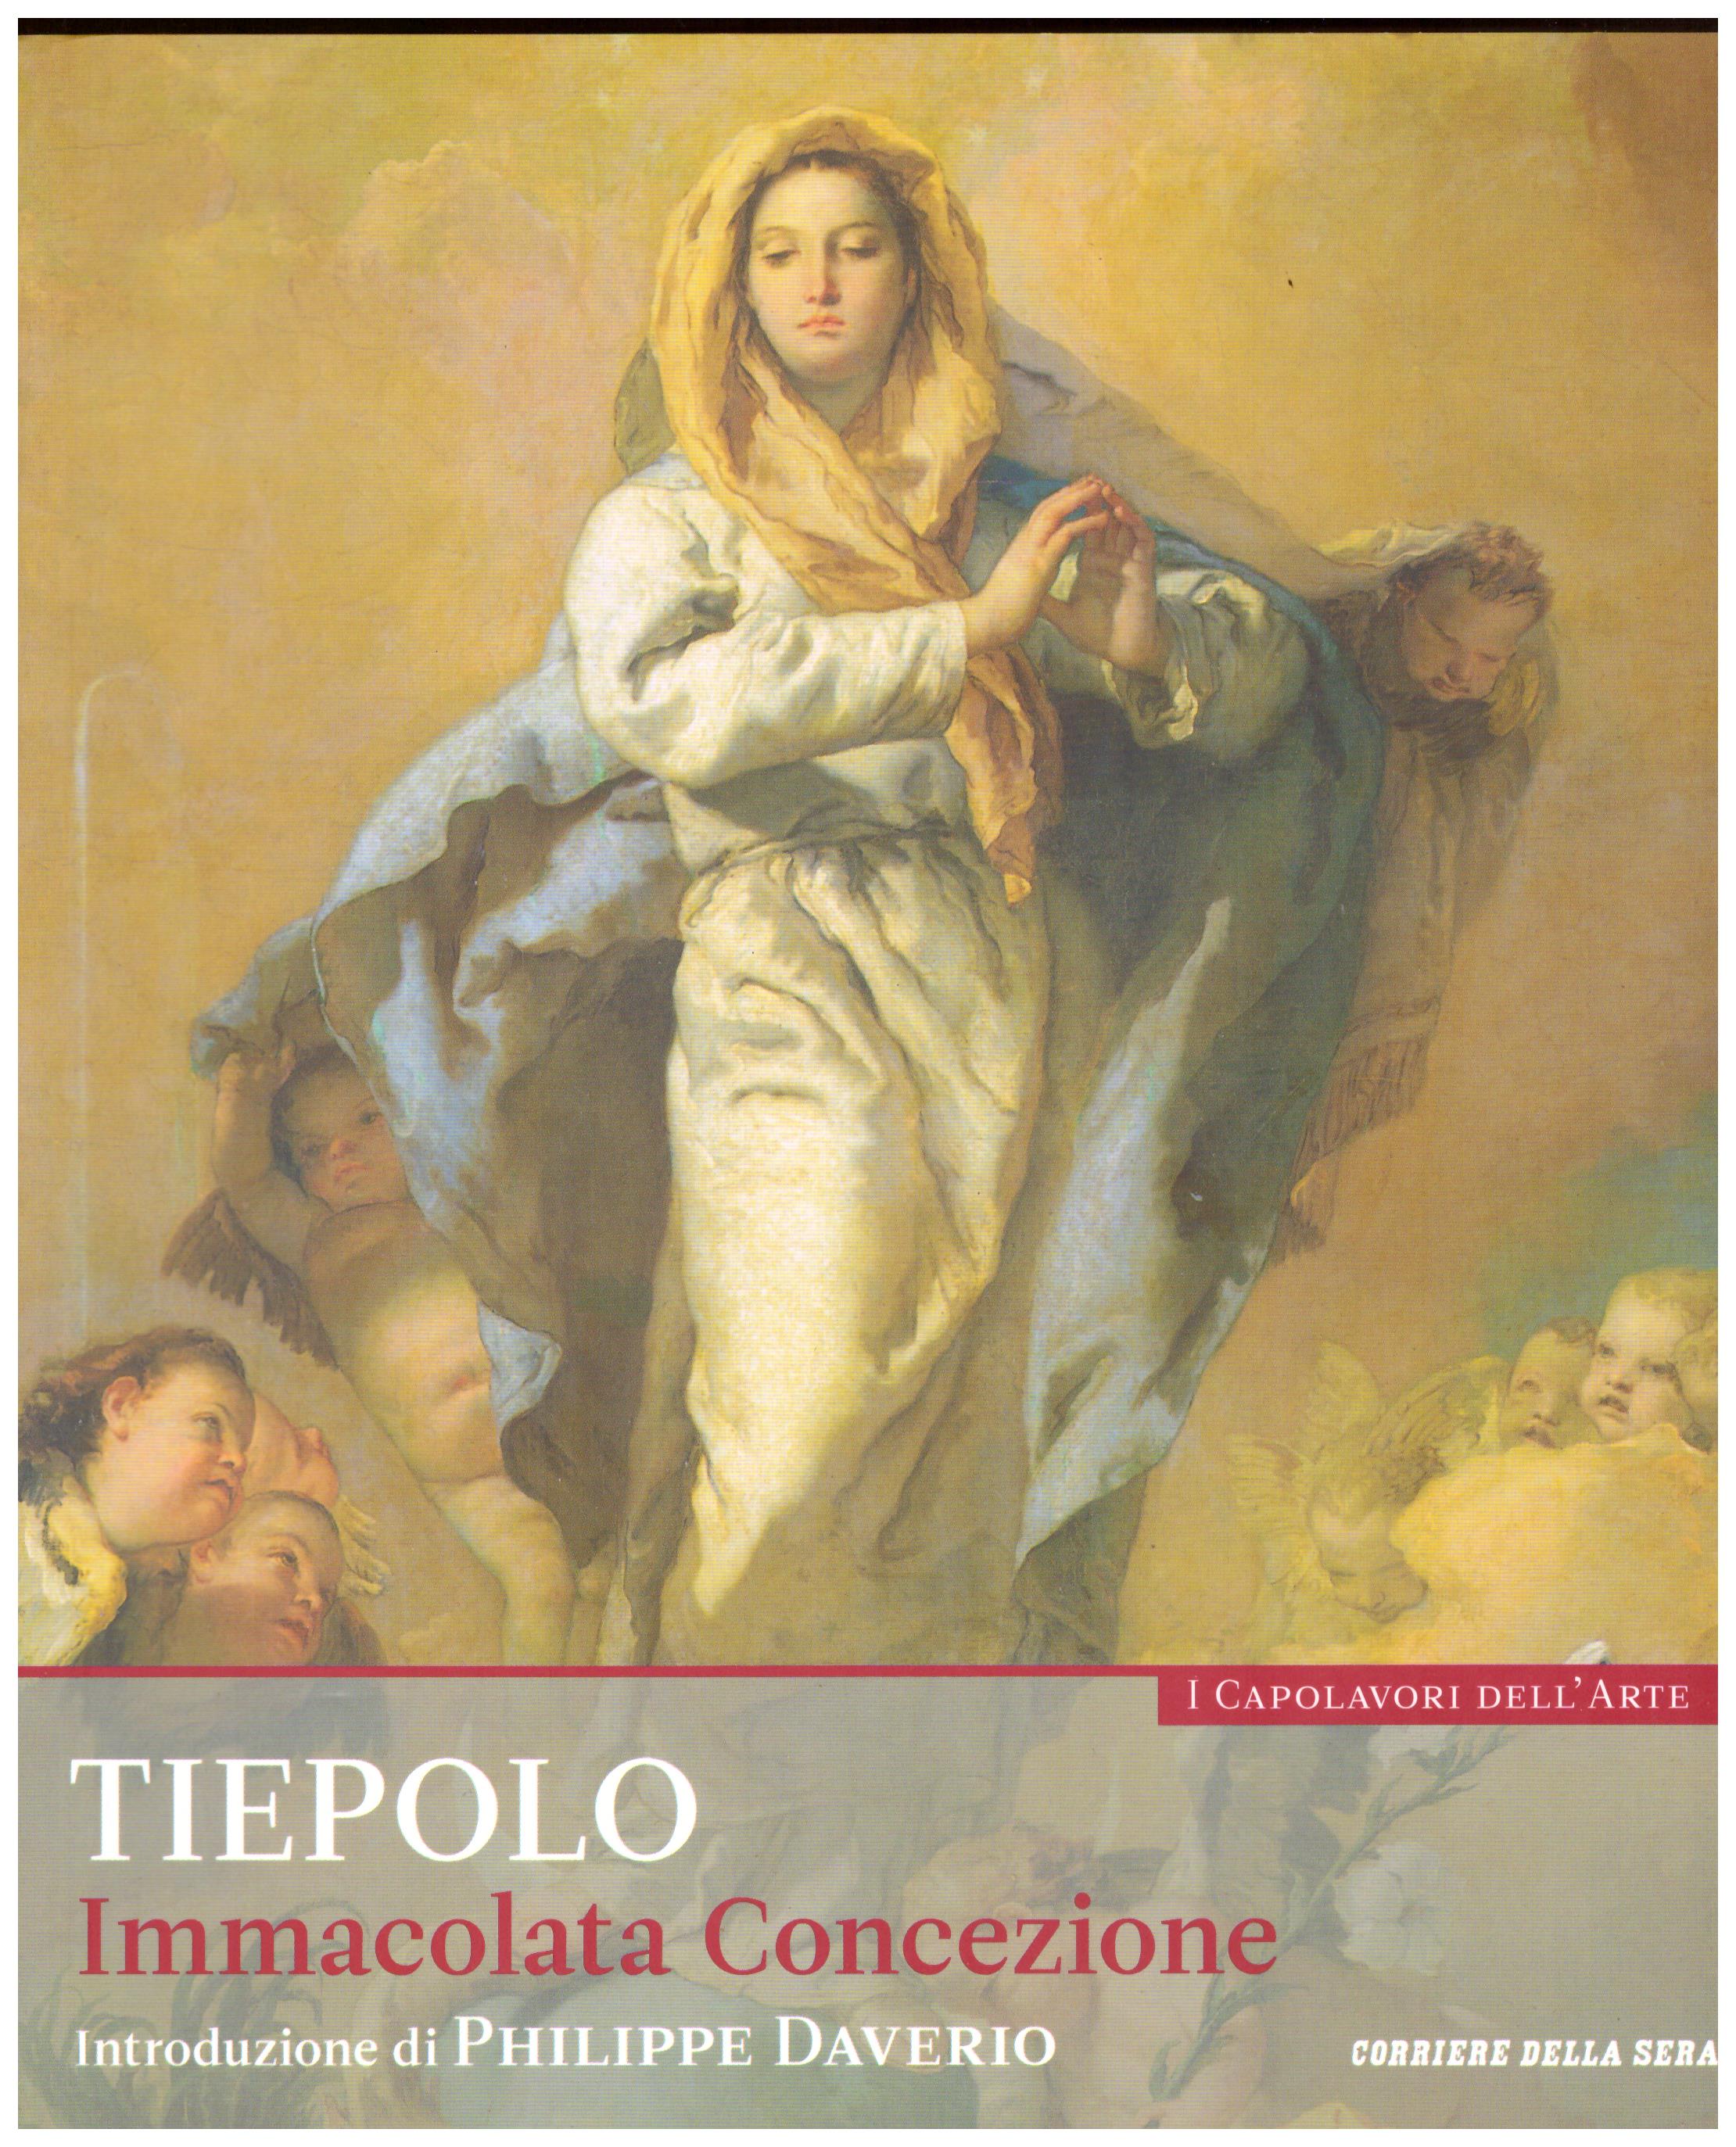 Titolo: I capolavori dell'arte,Tiepolo  n.22  Autore : AA.VV.   Editore: education,it/corriere della sera, 2015